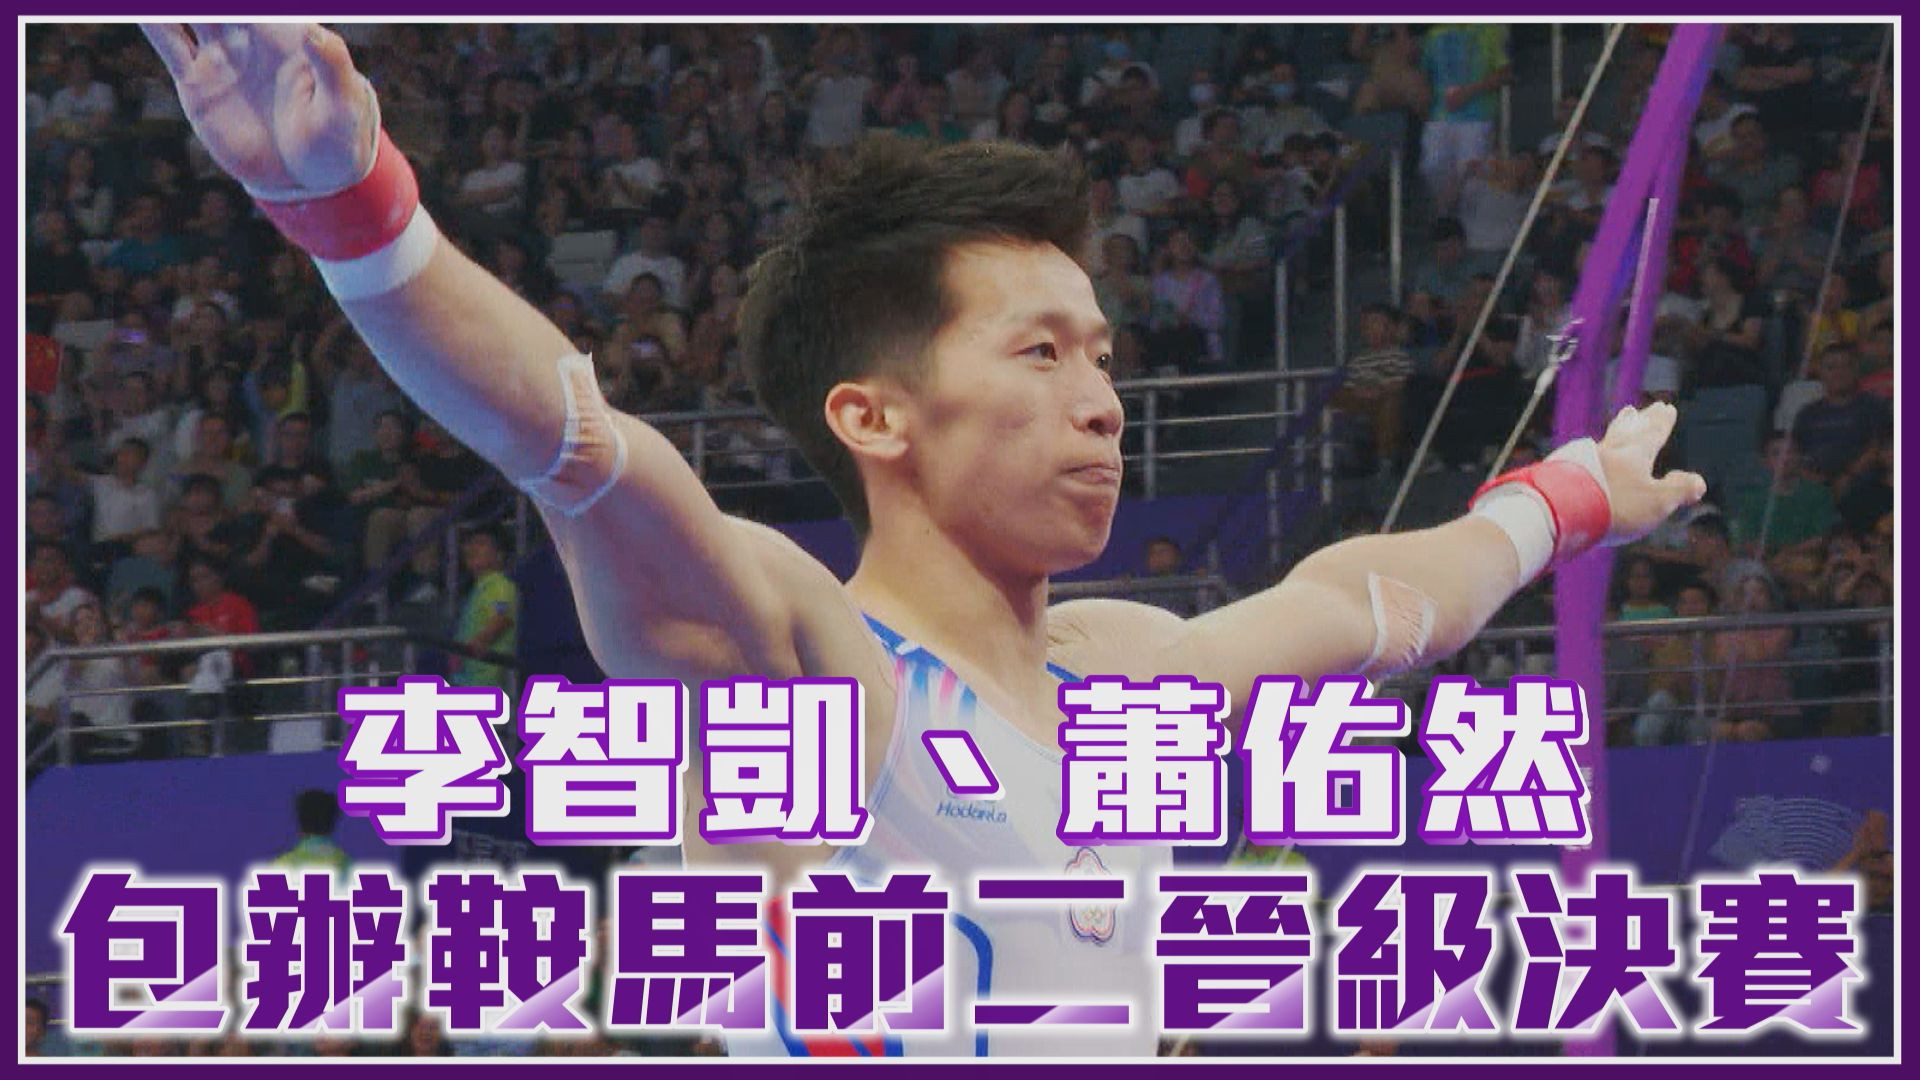 09/24 李智凱、蕭佑然 包辦鞍馬前二晉級決賽